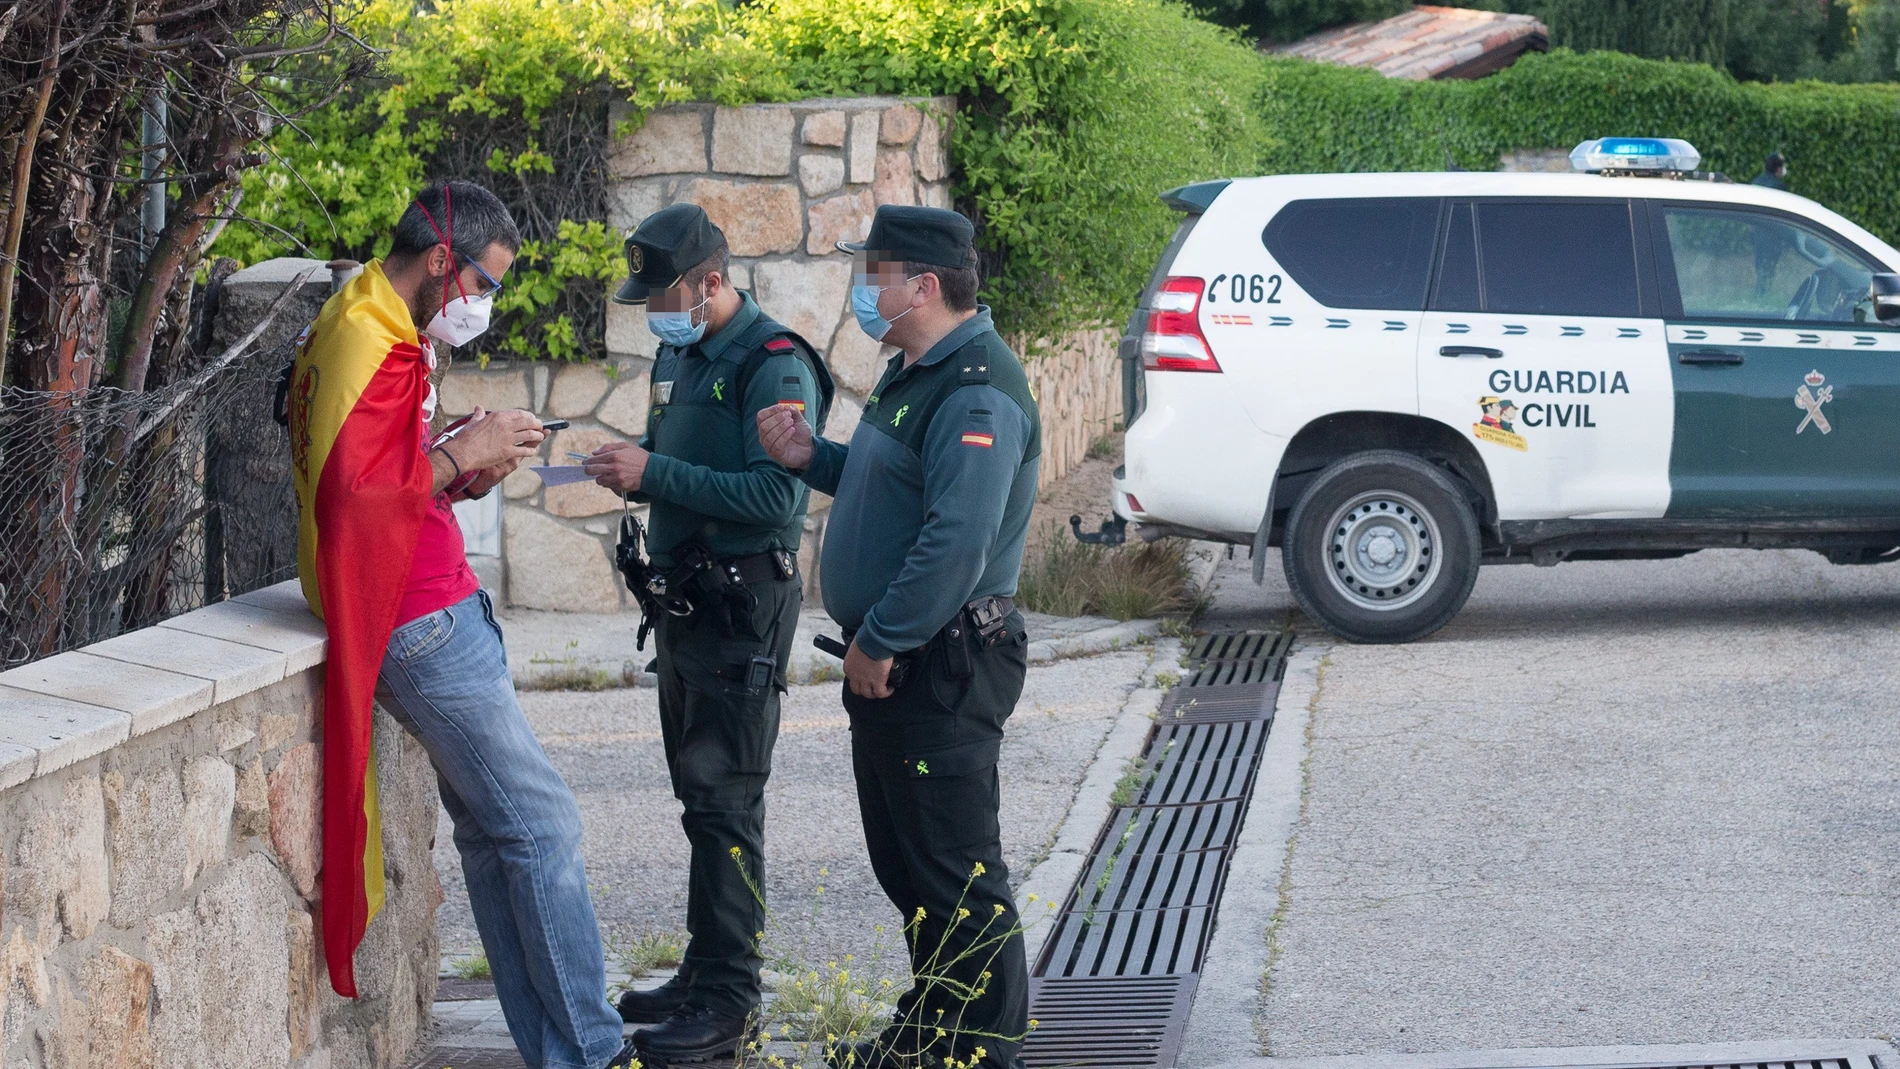 La Guardia Civil identifica a una persona en las inmediaciones de la vivienda de Pablo Iglesias e Irene Montero en Galapagar (Madrid) el pasado agosto